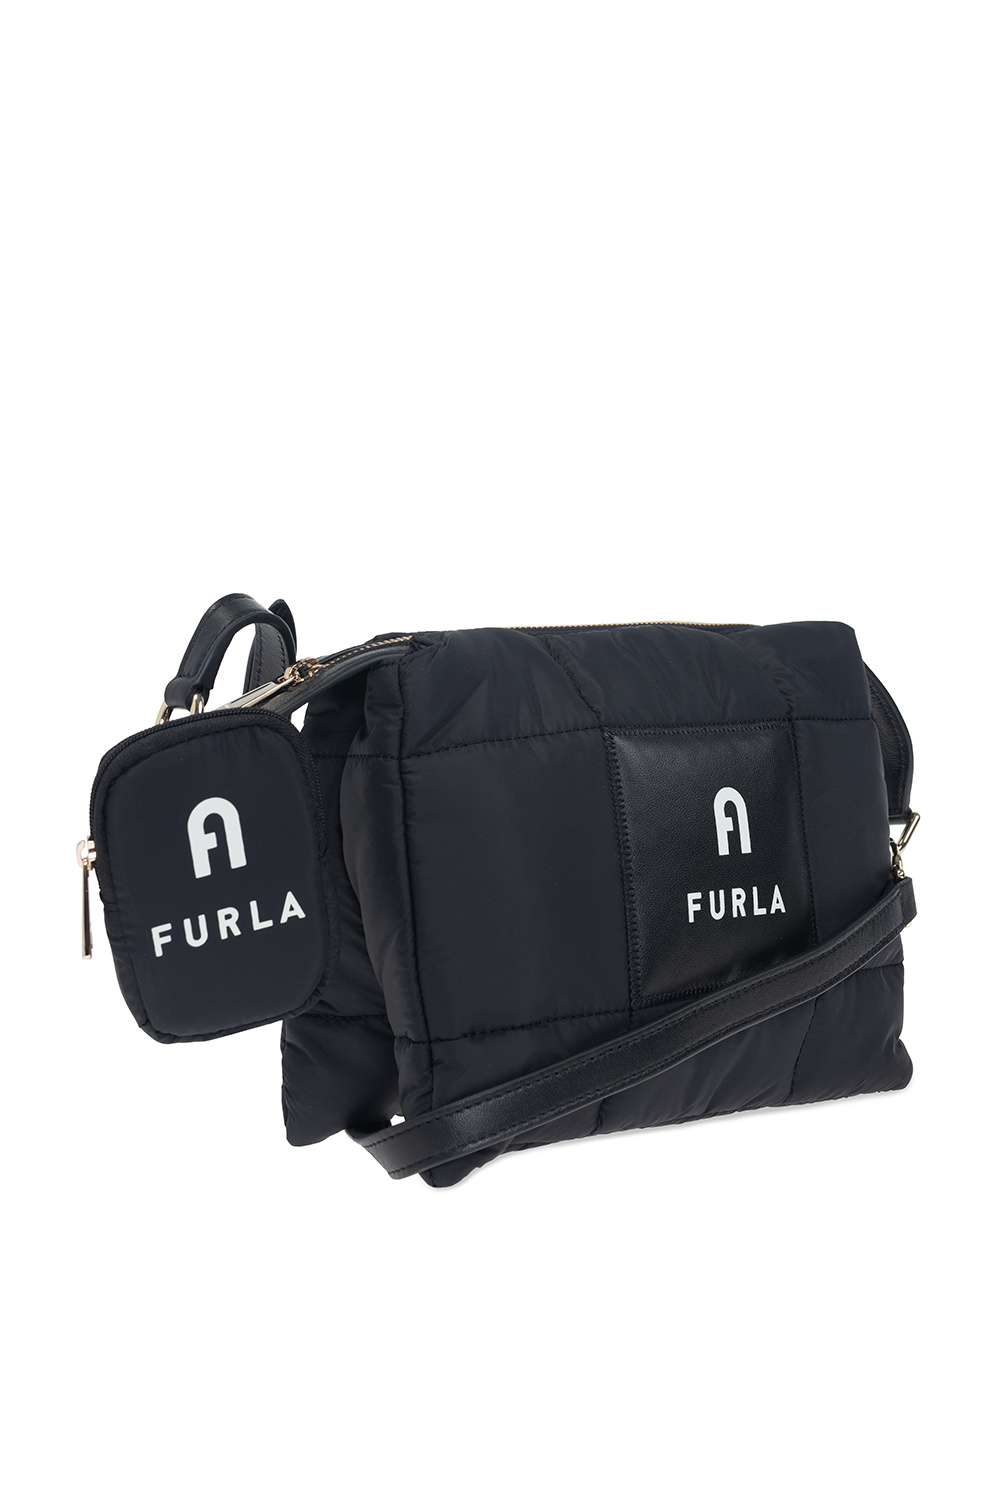 Furla ‘Piuma Small’ shoulder Max bag